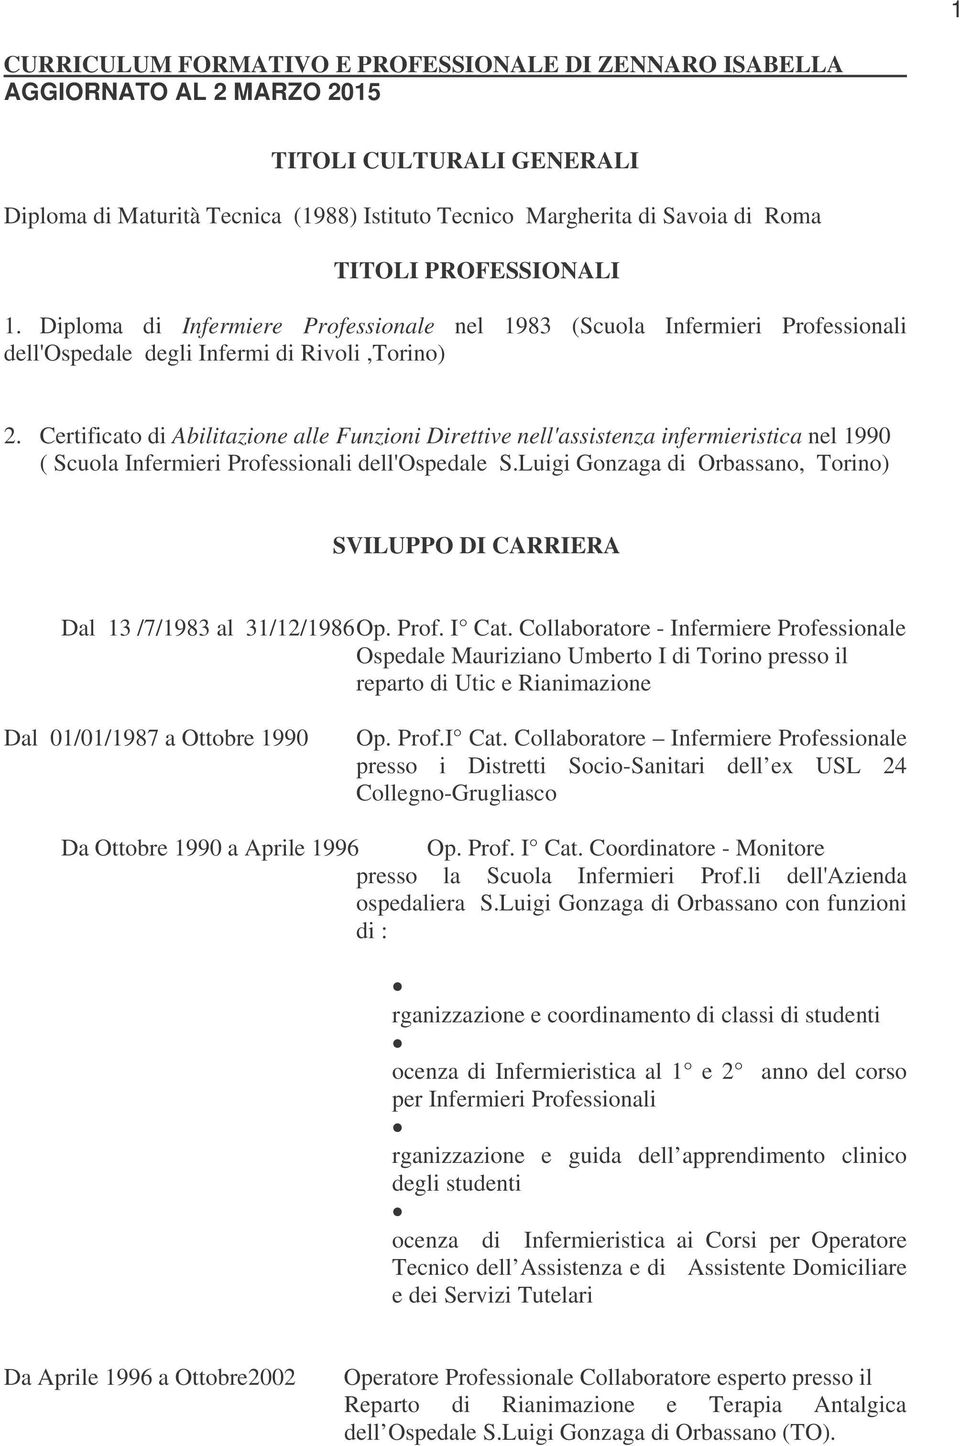 Certificato di Abilitazione alle Funzioni Direttive nell'assistenza infermieristica nel 1990 ( Scuola Infermieri Professionali dell'ospedale S.